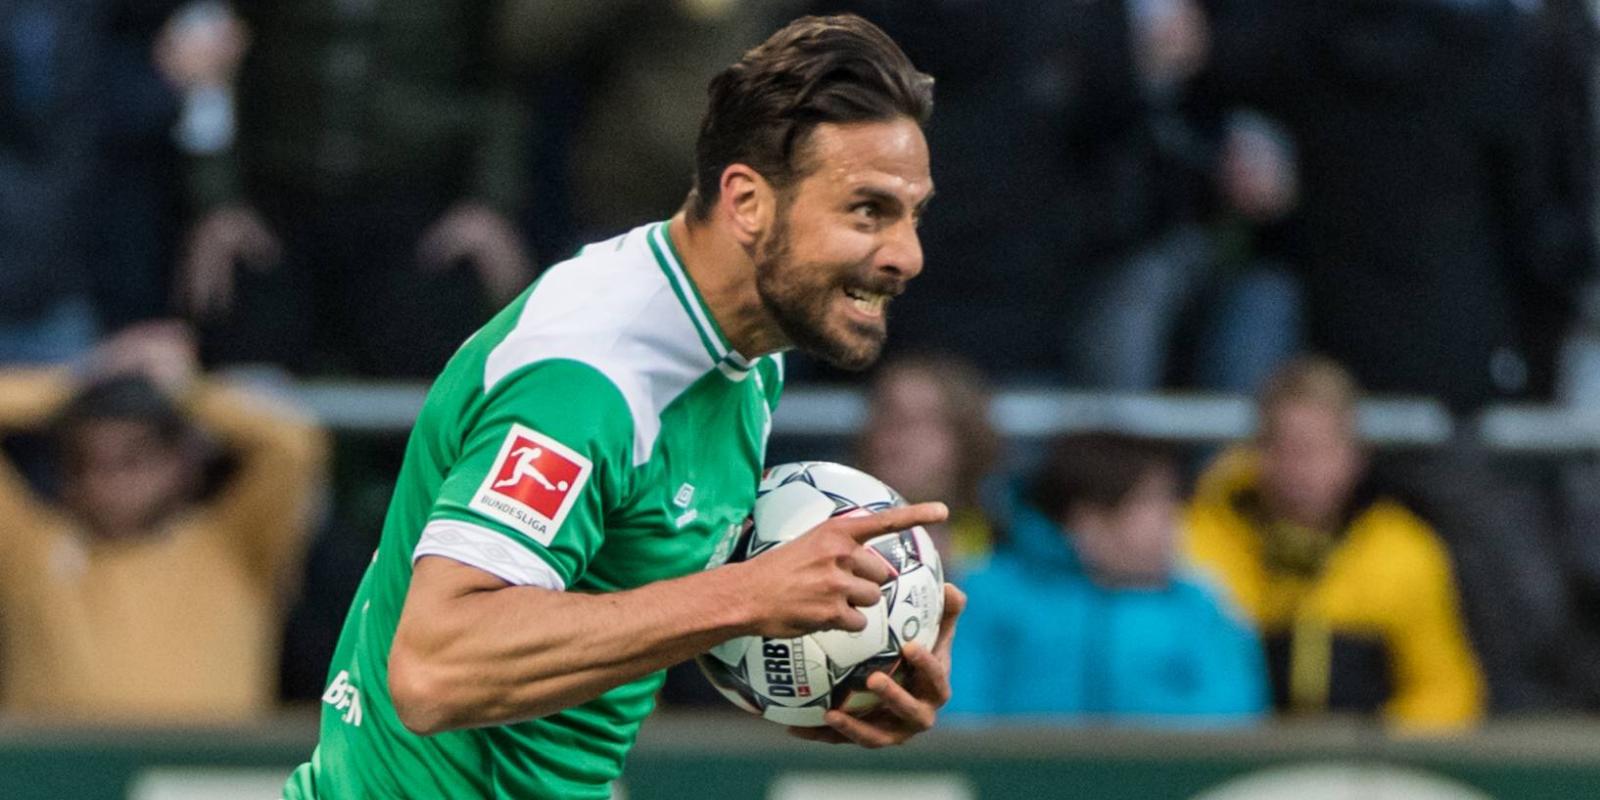 Claudio Pizarro vom SV Werder Bremen